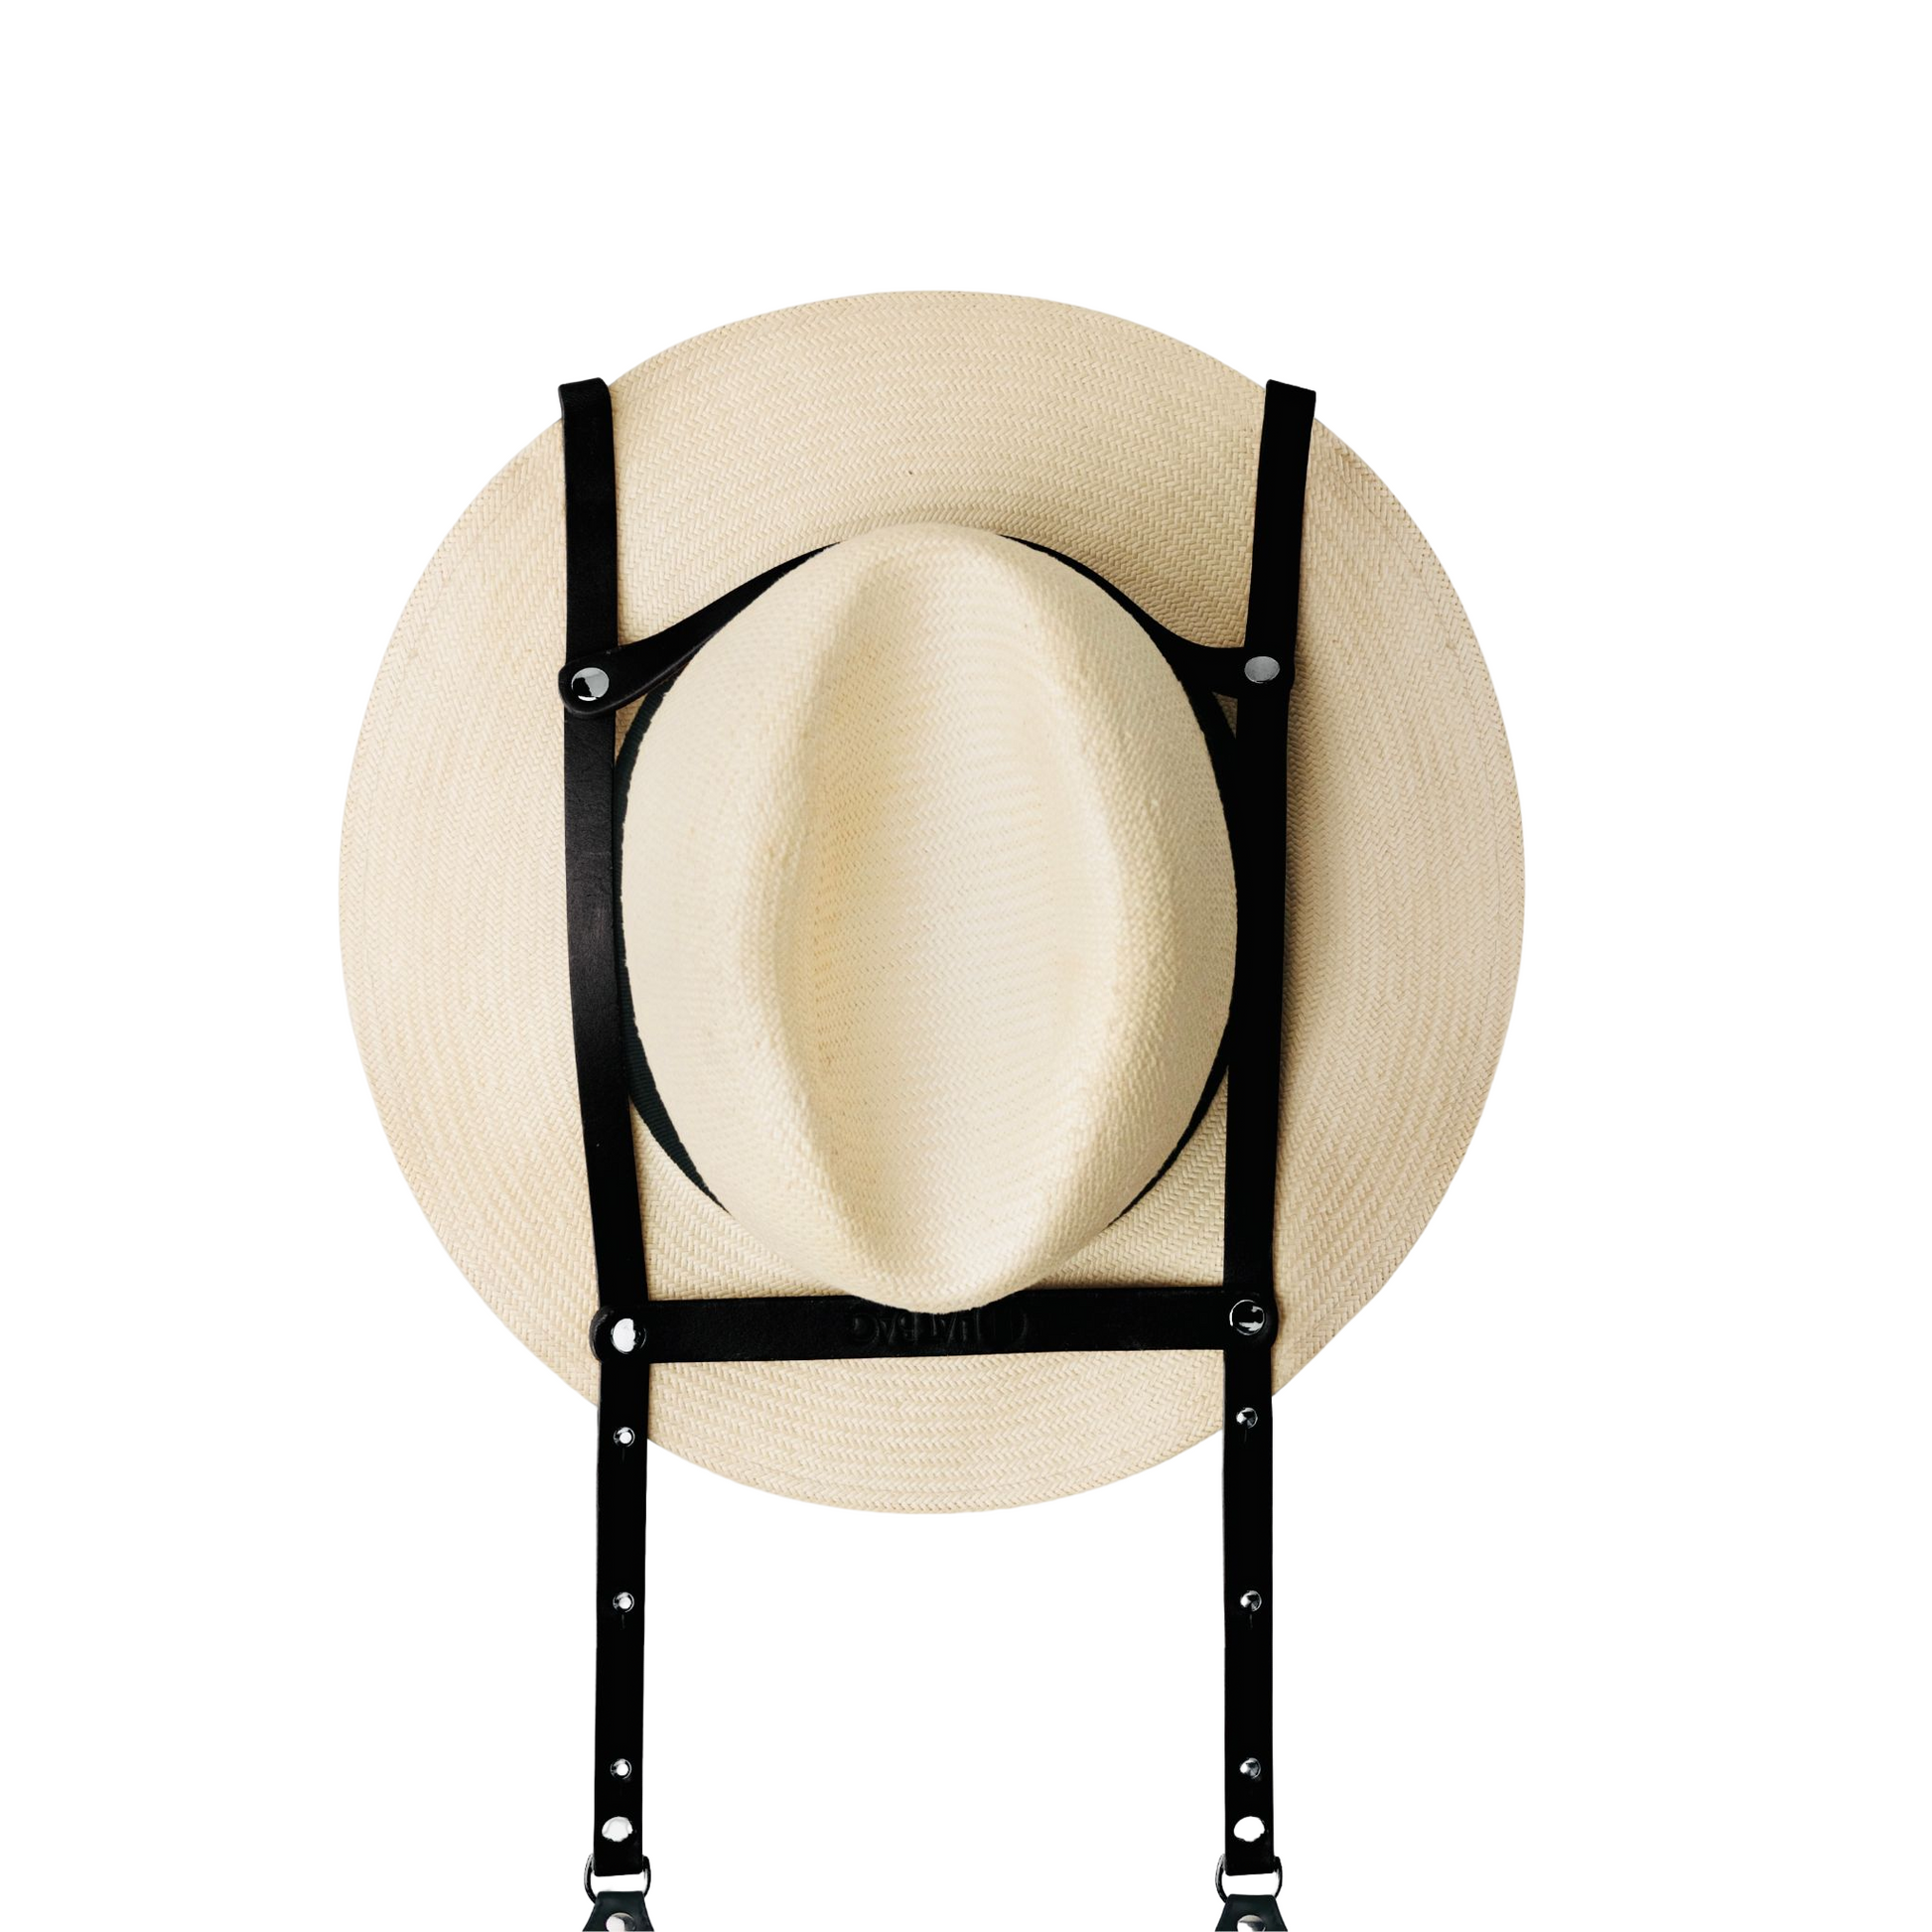 Τσάντα Καπέλο Καπέλο Τσάντα "Paris" σε μαύρο δέρμα και ασημί αλυσίδες - καπέλο τσάντα paris